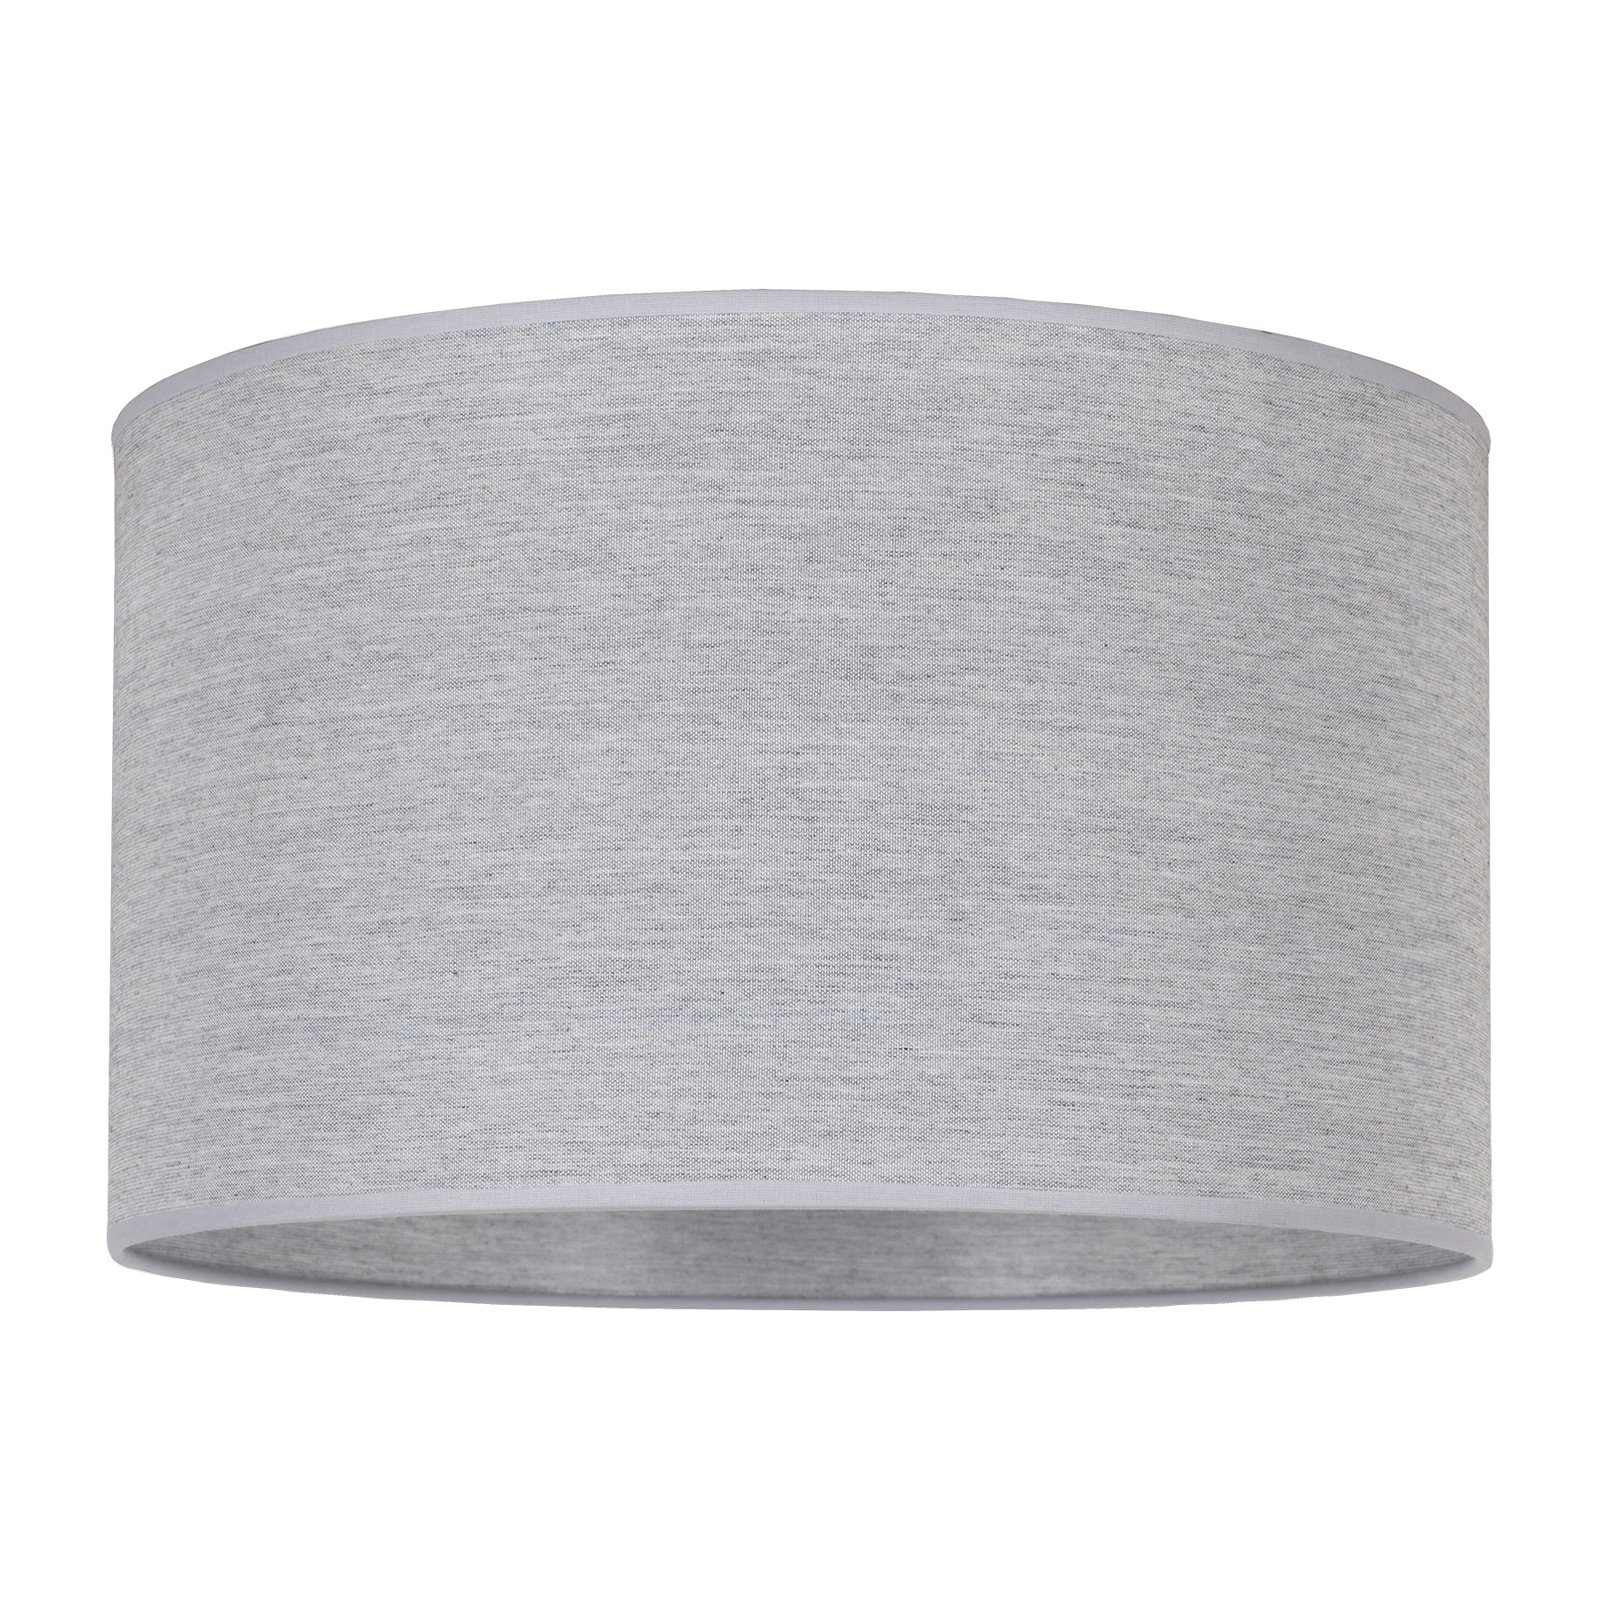 Lampskärm Roller, grå, Ø 50 cm, höjd 30 cm